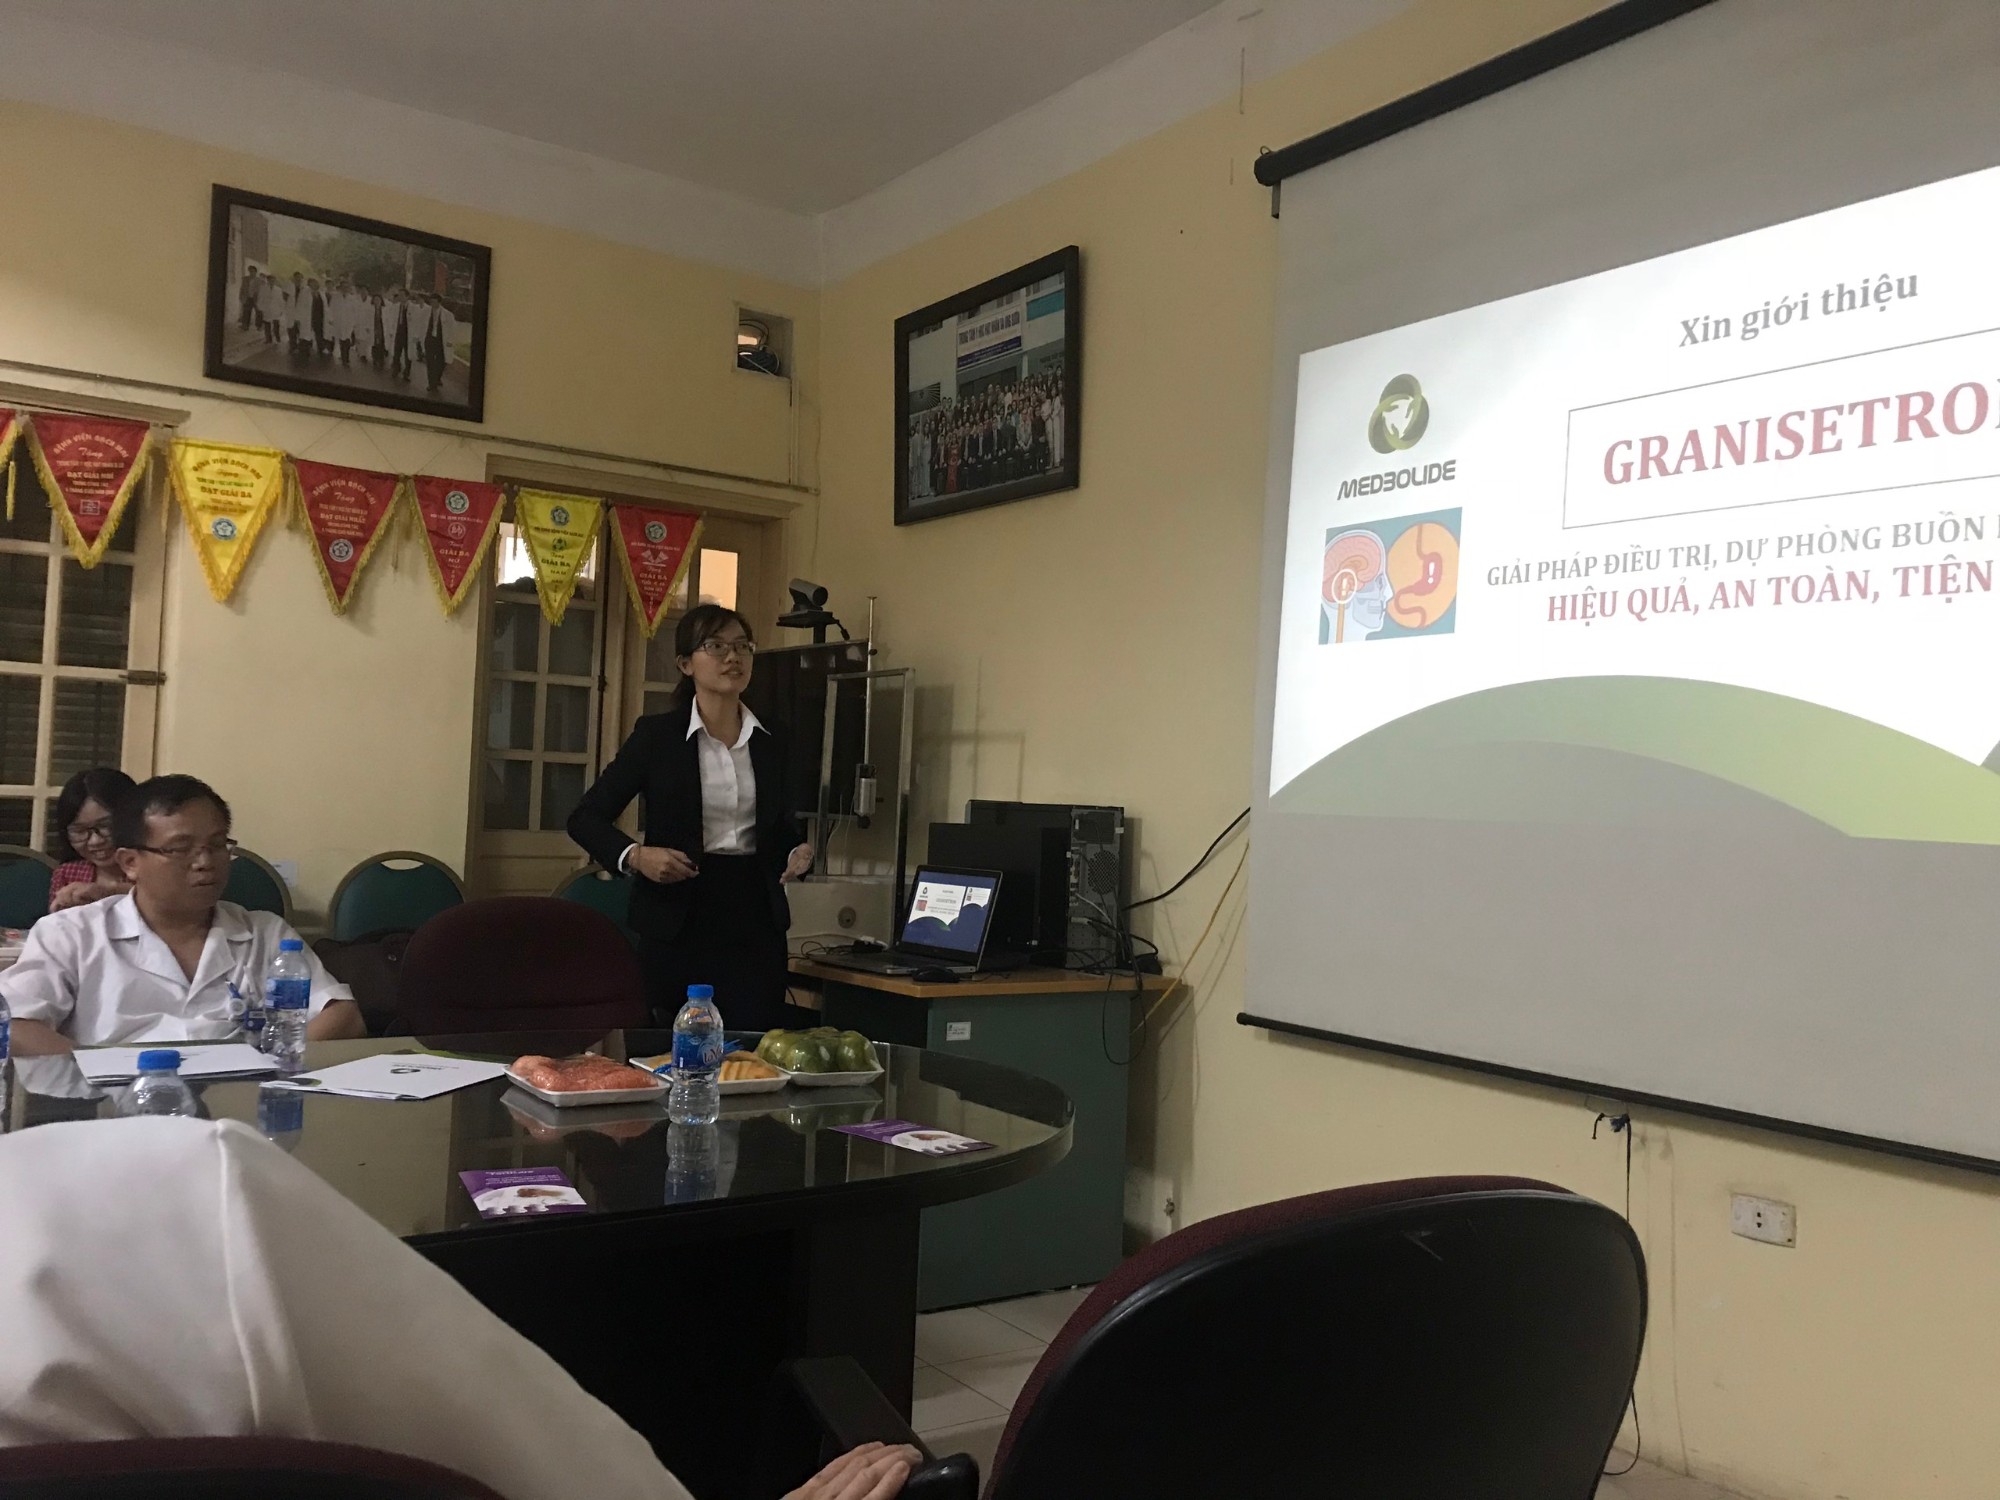 Báo cáo GRATRONSET – Trung Tâm Y Học Hạt nhân và Ung bướu, BV Bạch Mai Hà Nội